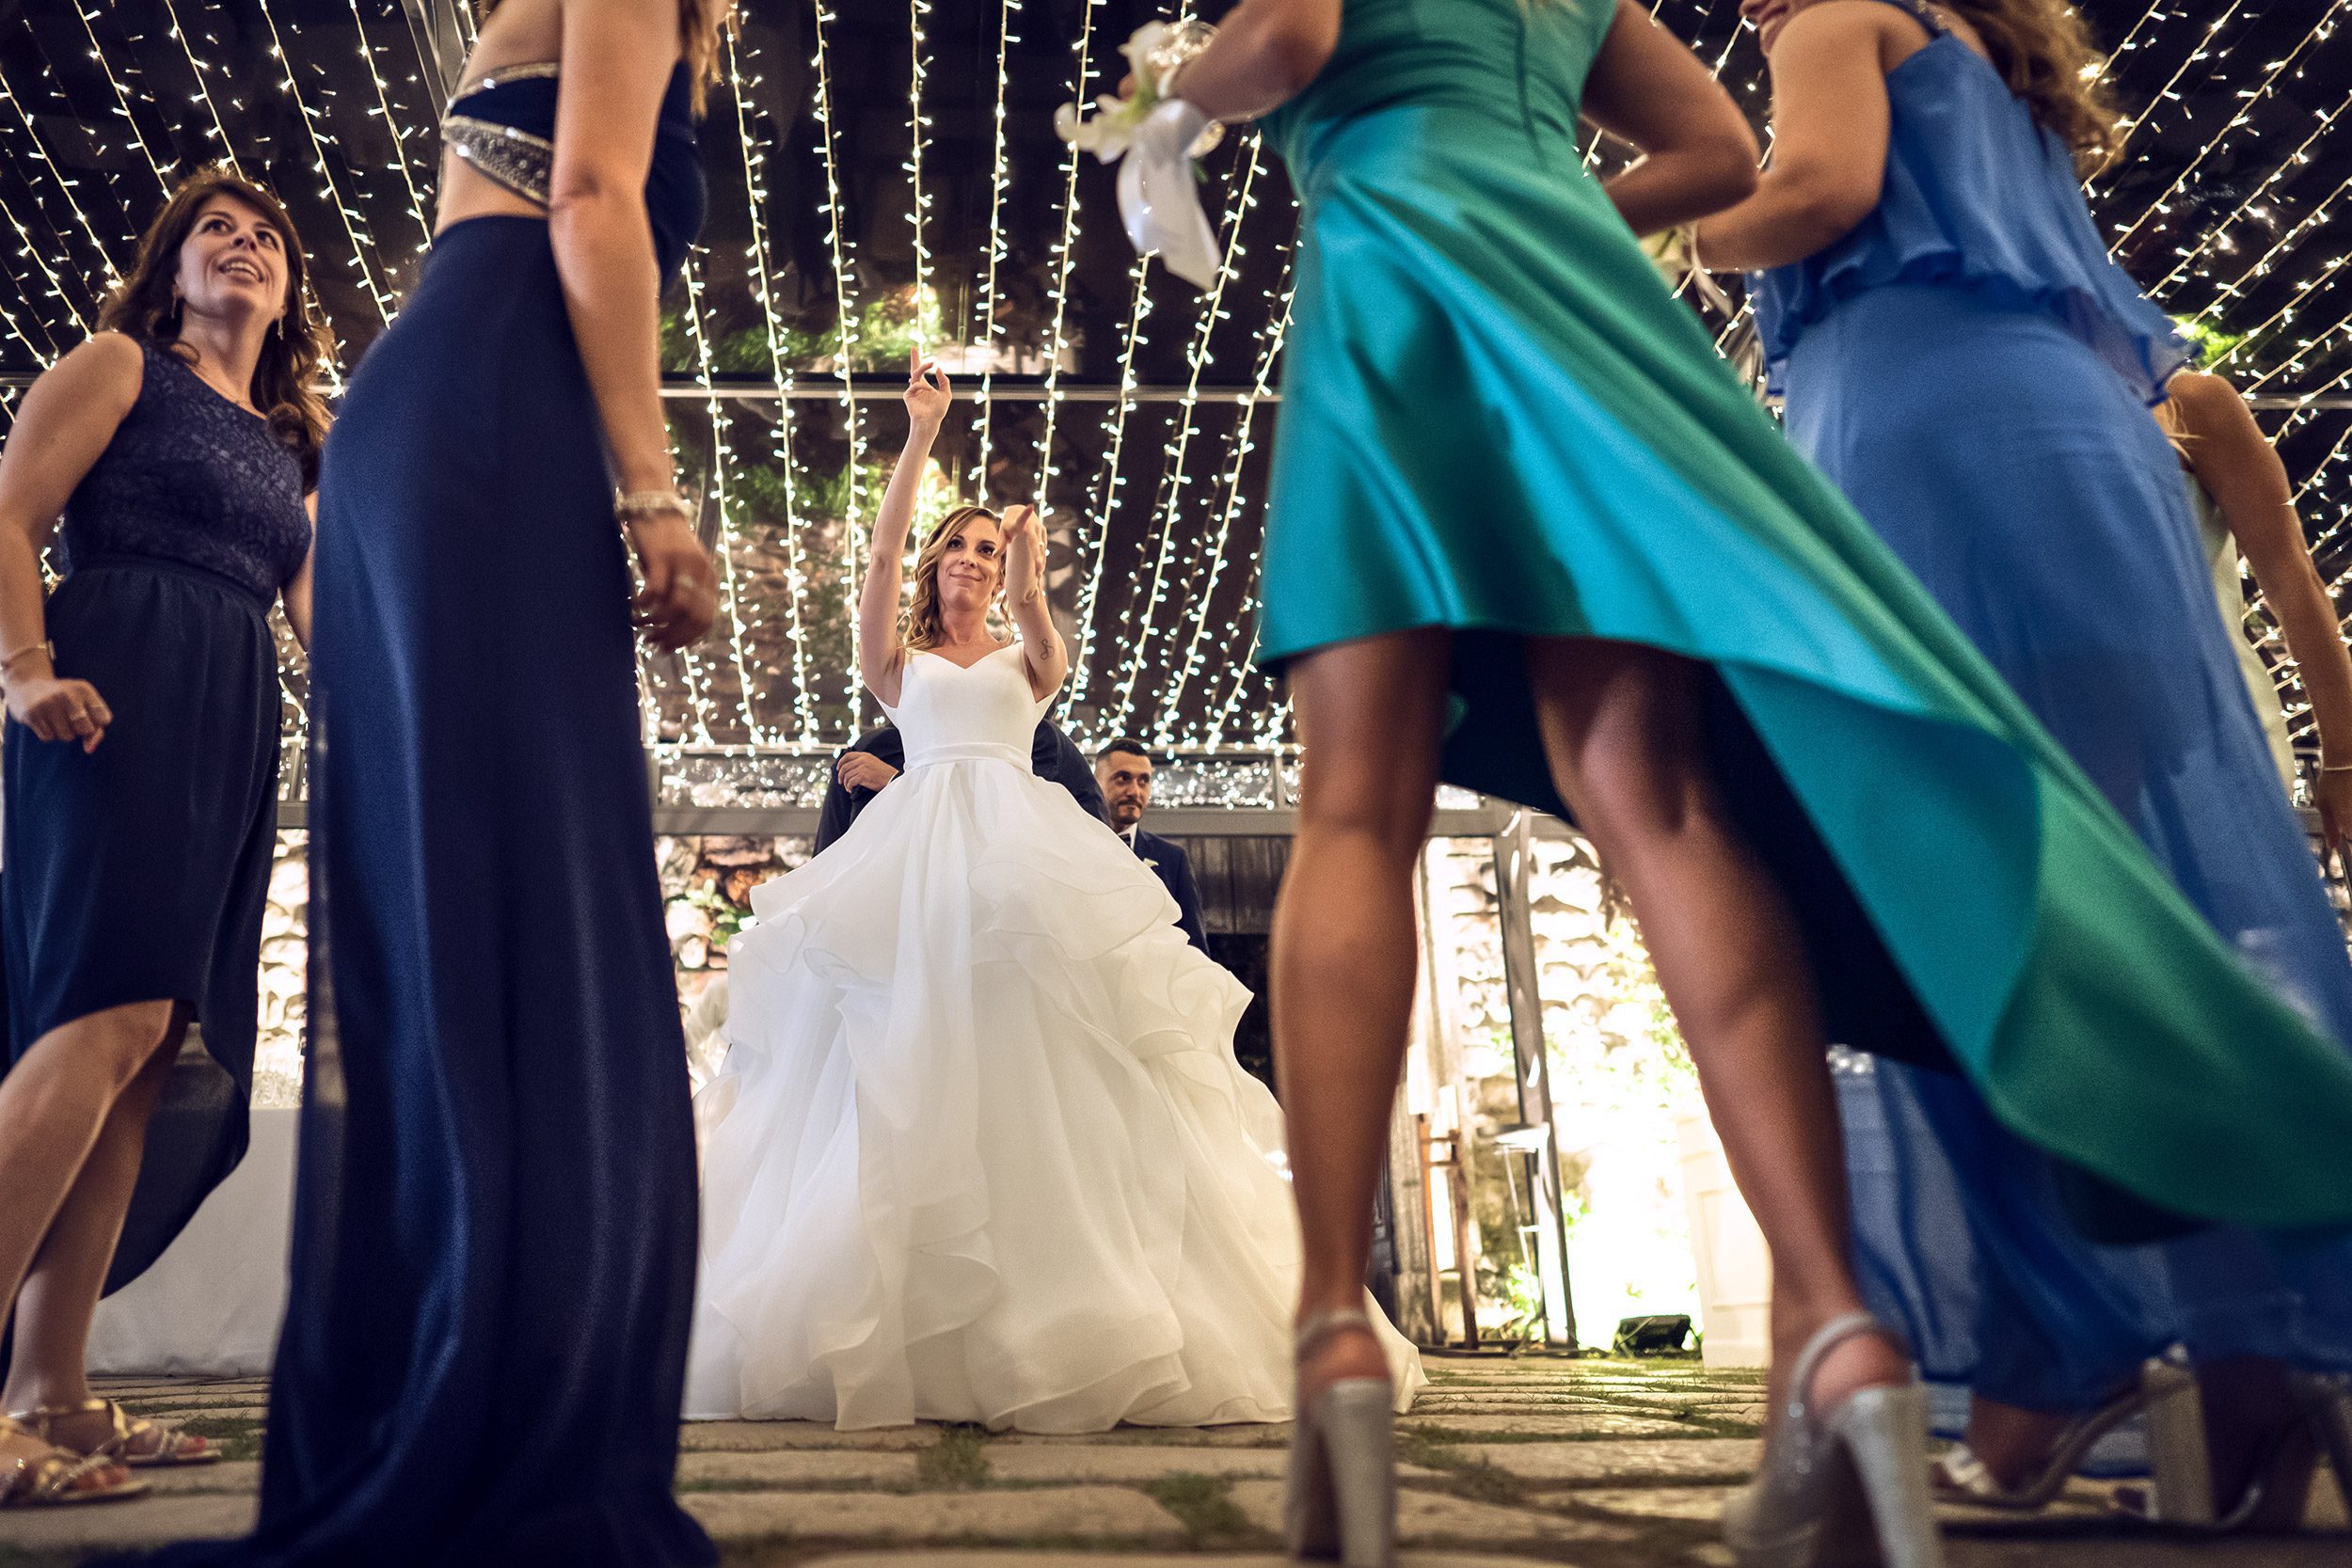 000 fotografo matrimonio reportage wedding sposi balli amici festa castello rossino calolziocorte lago como lecco 1